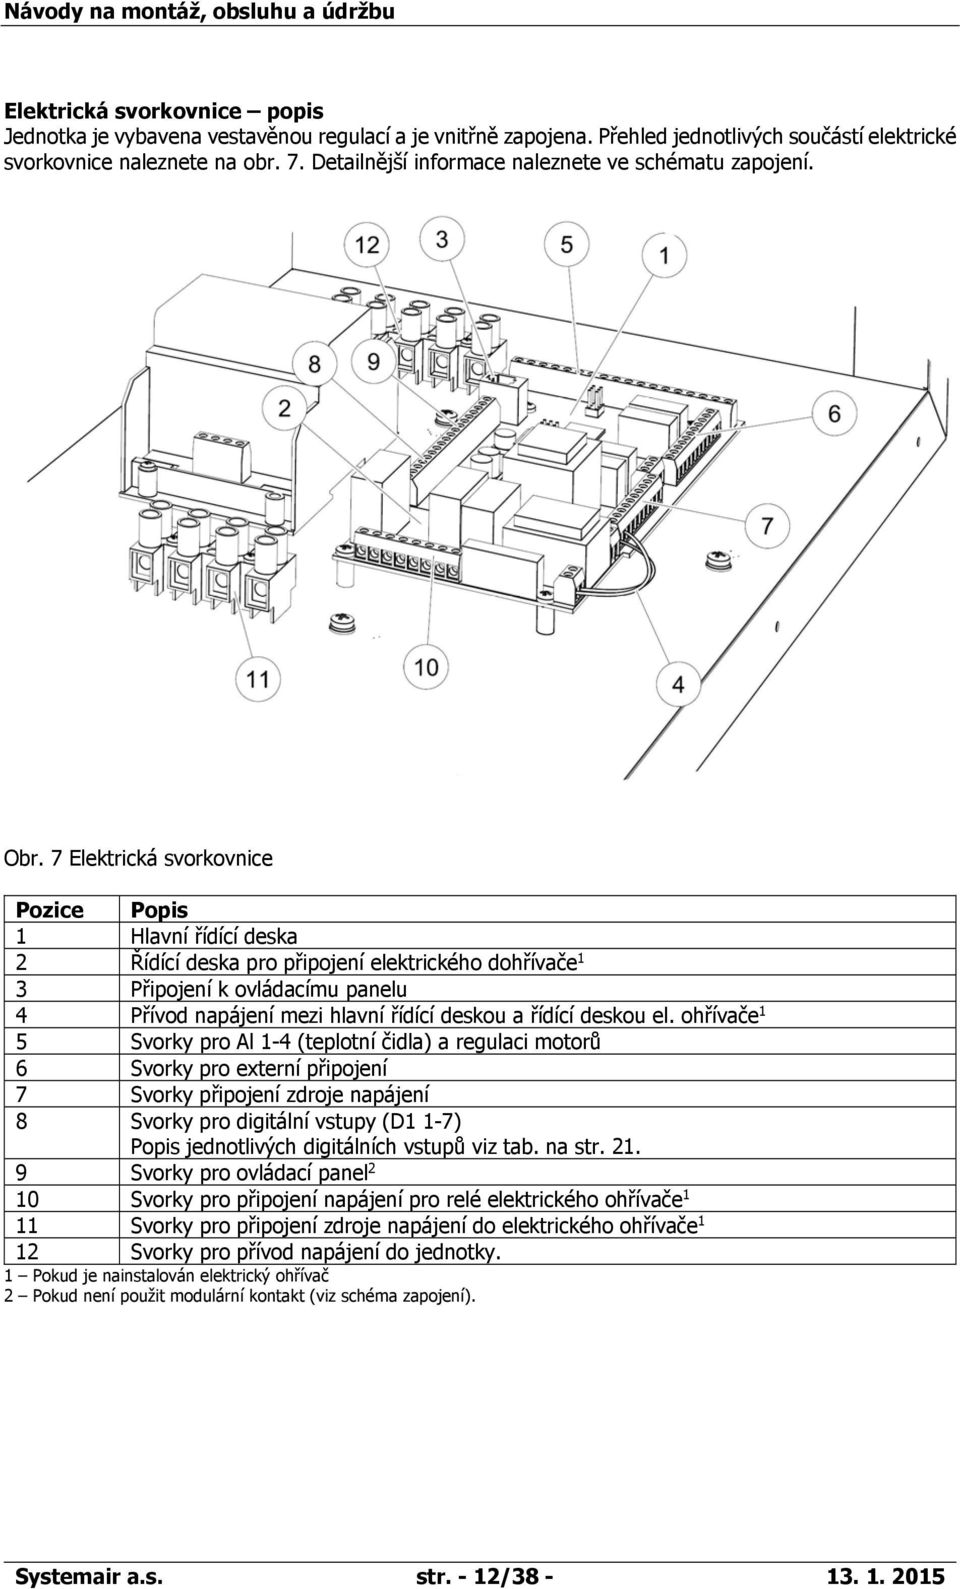 7 Elektrická svorkovnice Pozice Popis 1 Hlavní řídící deska 2 Řídící deska pro připojení elektrického dohřívače 1 3 Připojení k ovládacímu panelu 4 Přívod napájení mezi hlavní řídící deskou a řídící